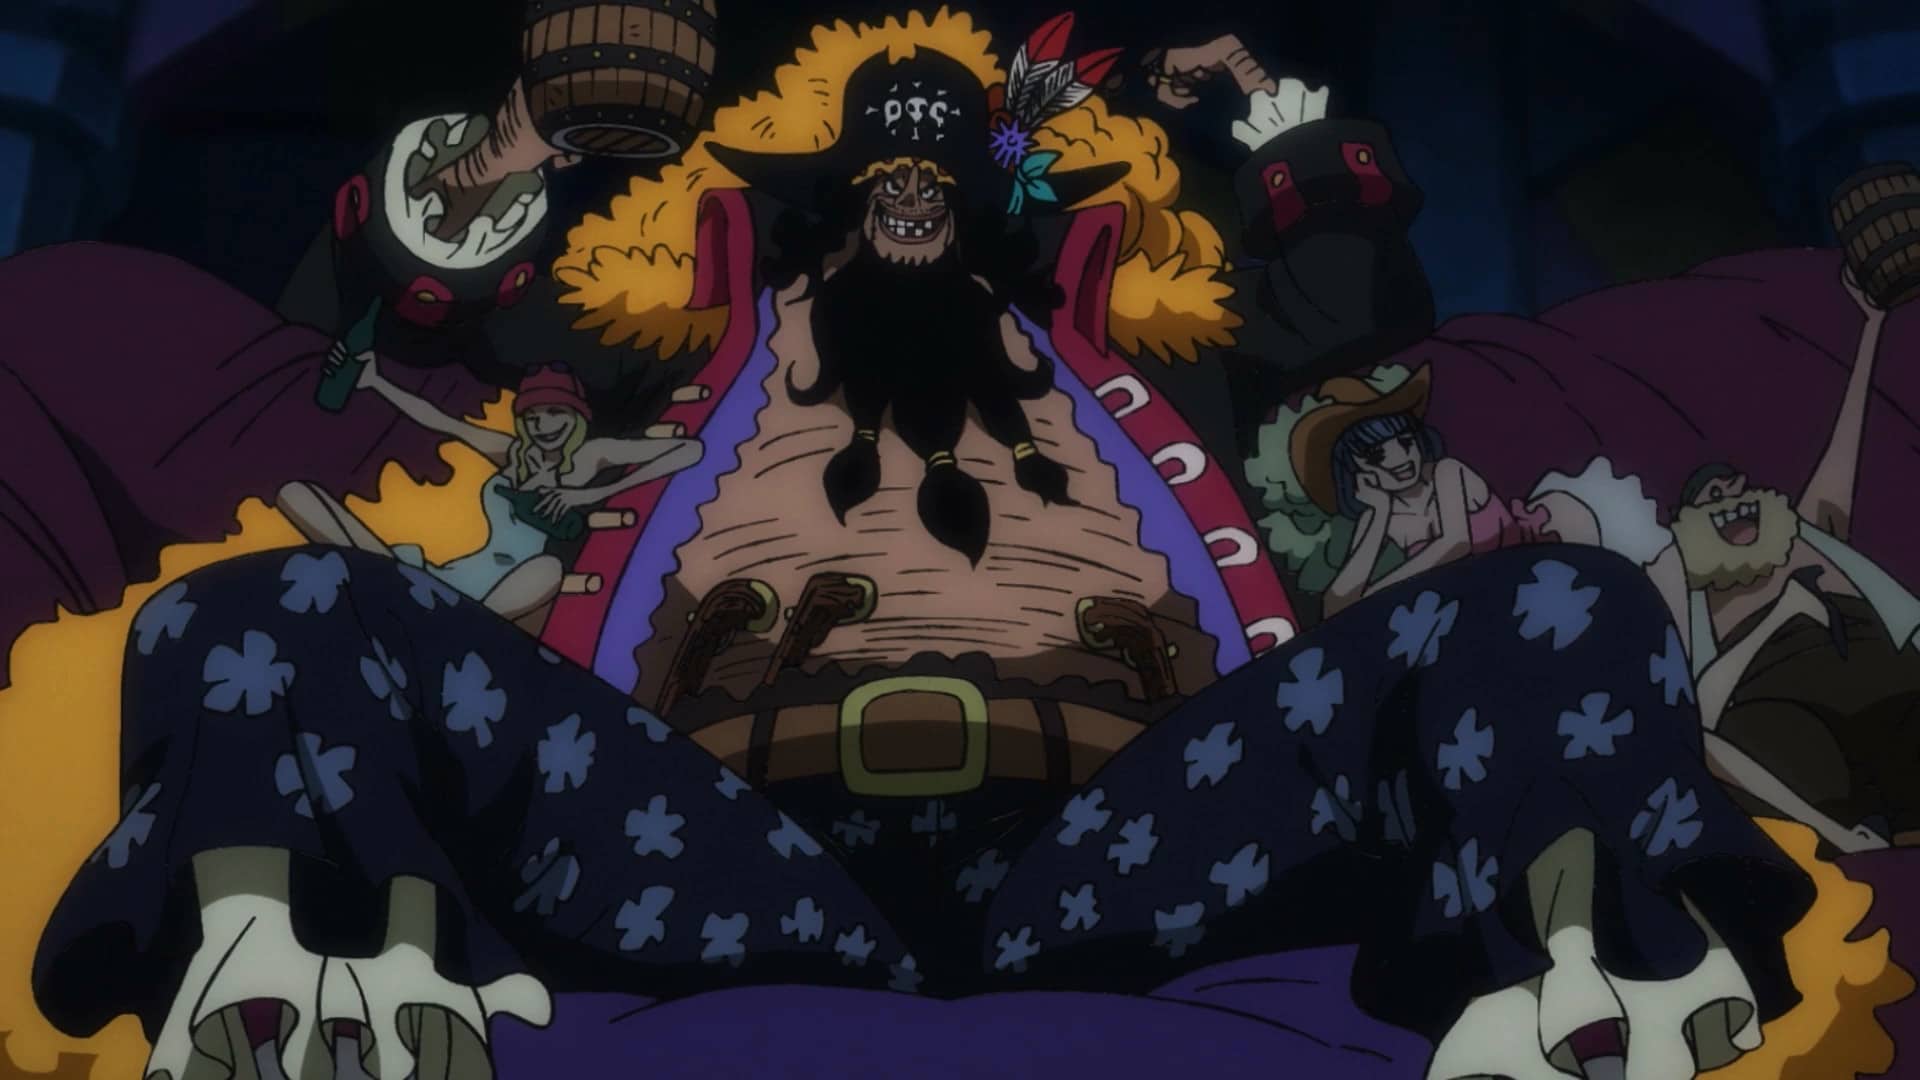 Barba Branca - Tudo sobre o personagem de One Piece - Critical Hits